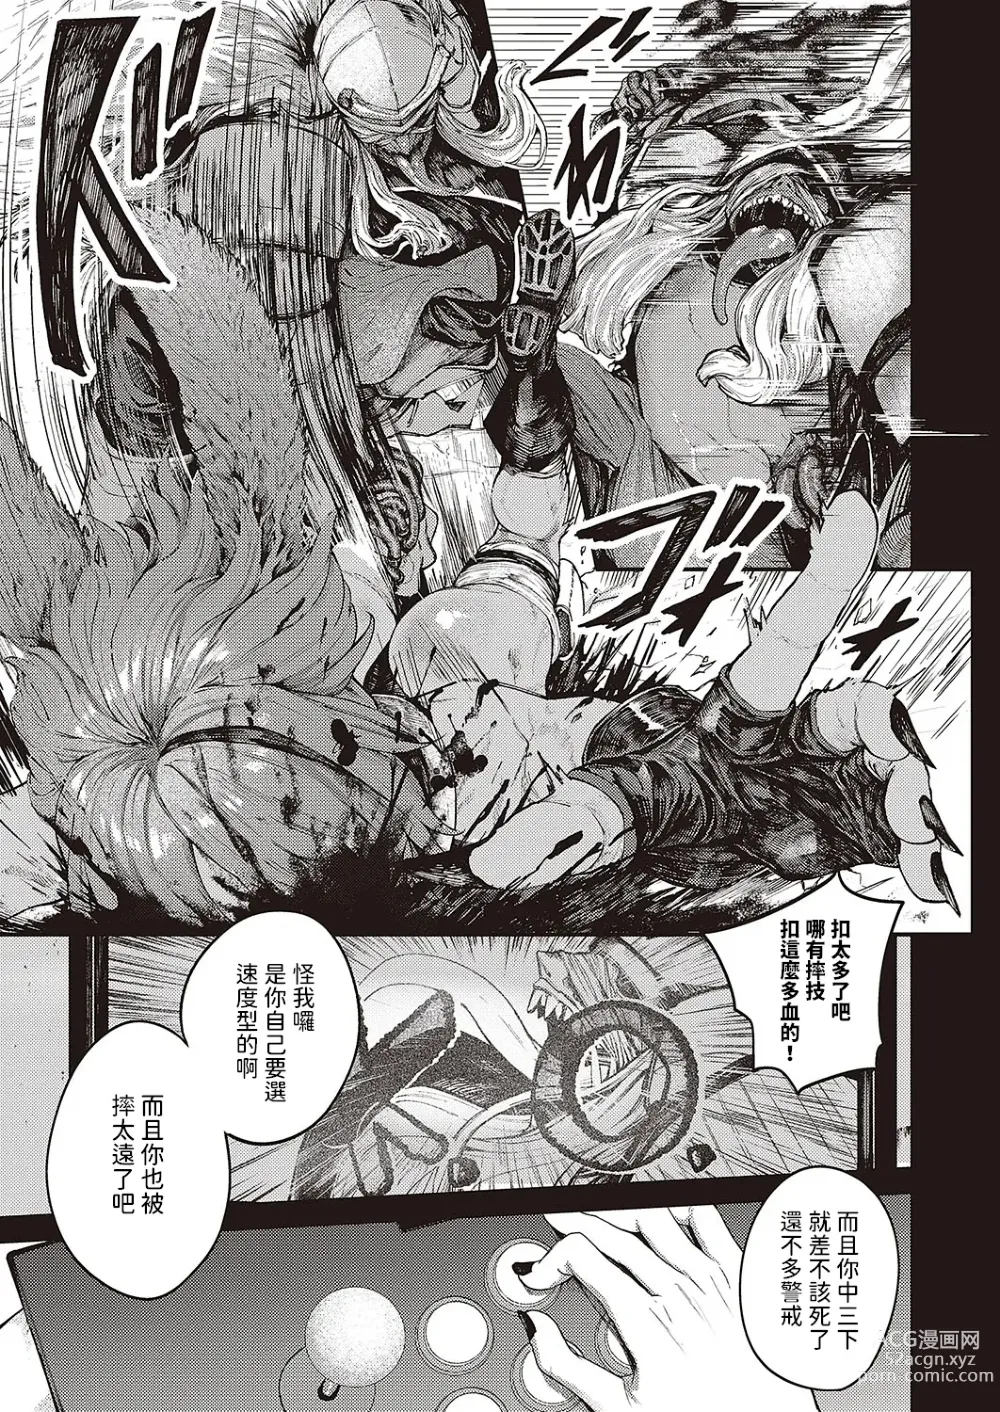 Page 5 of manga Tooriame